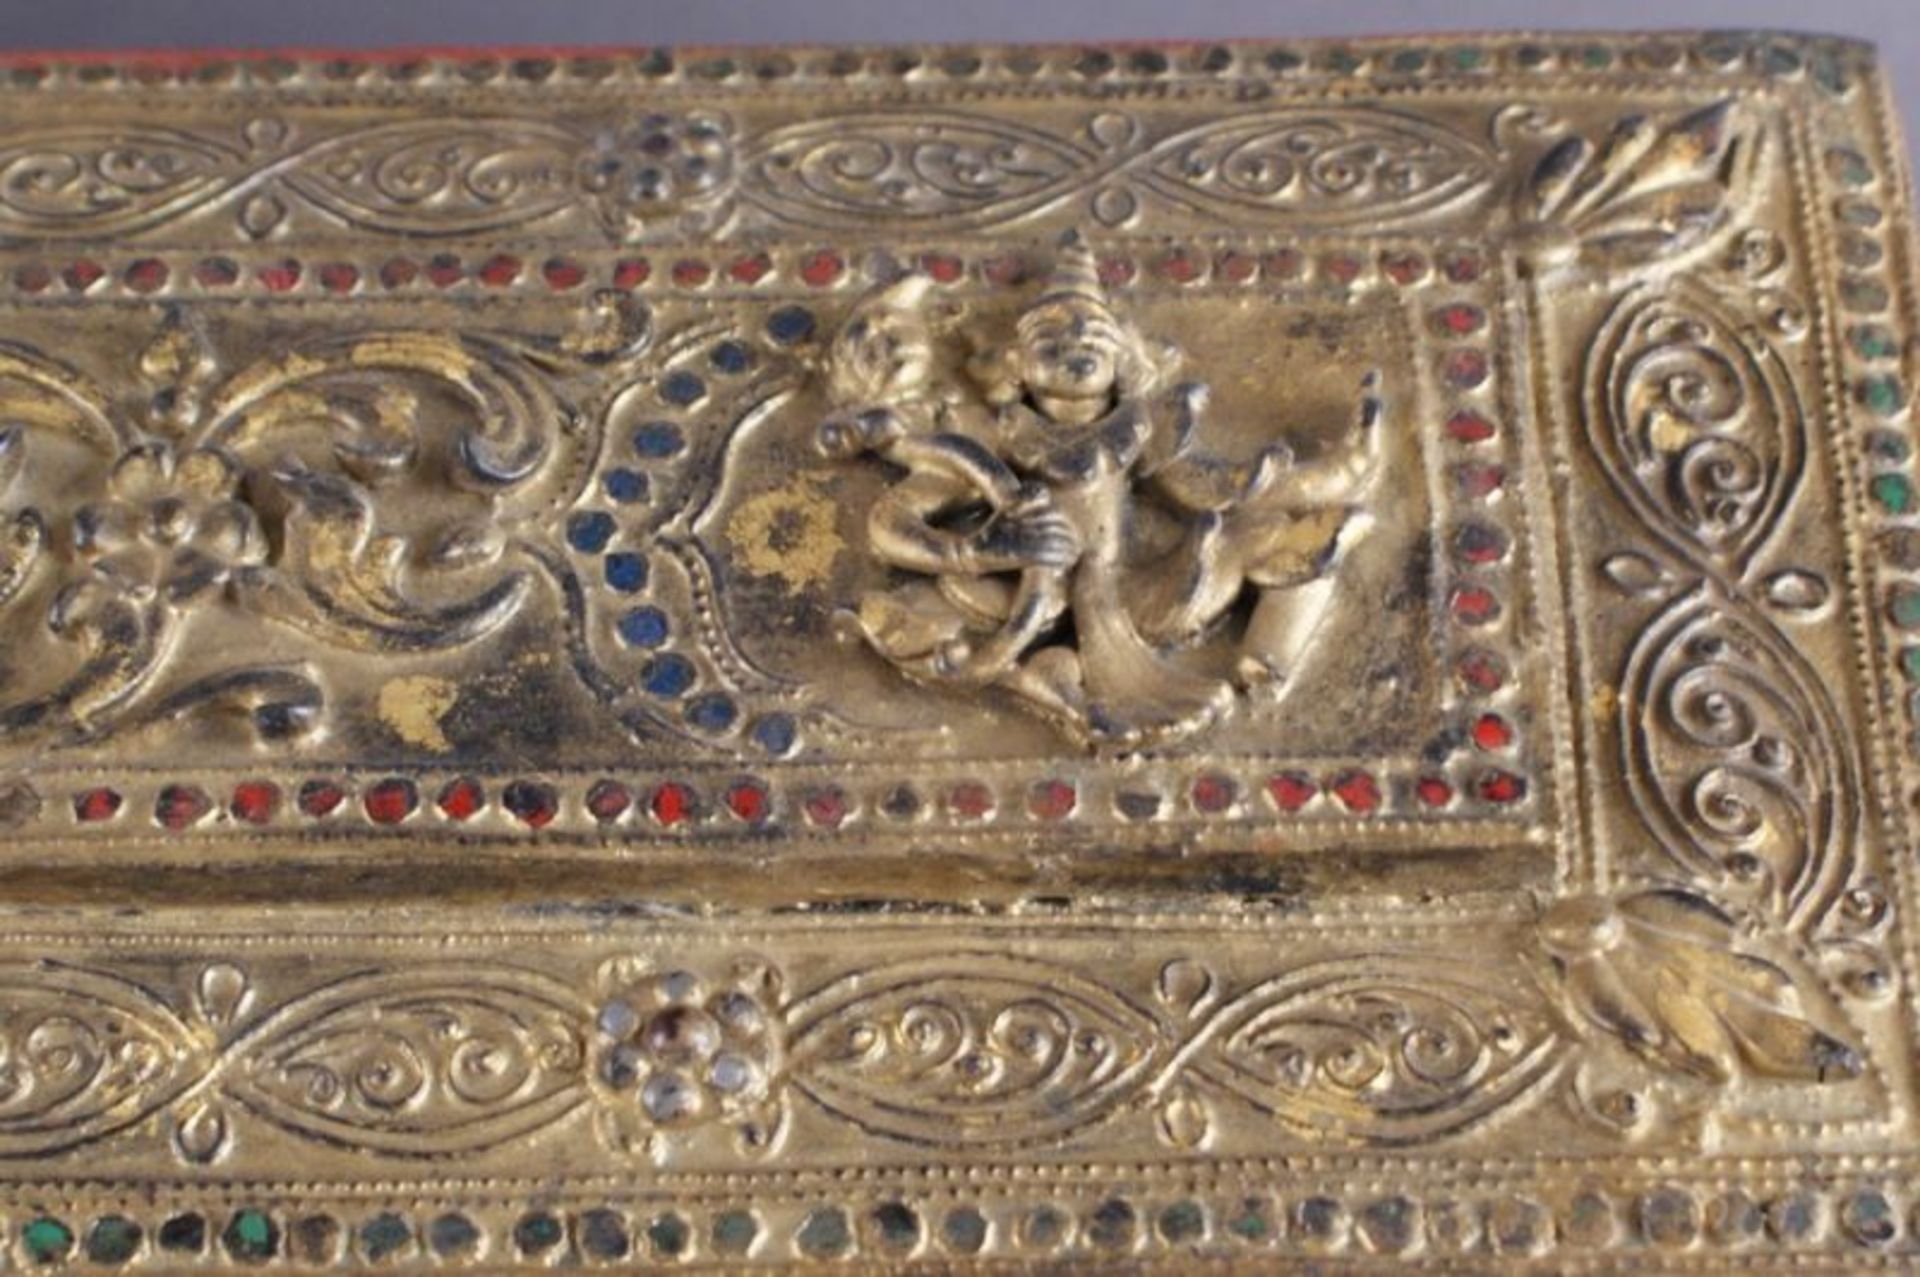 DOKUMENTEN SCHREIN asiatische Schatulle aus Holz mit Sockel, fein beschnitzt und bemalt, umseitig - Bild 11 aus 11